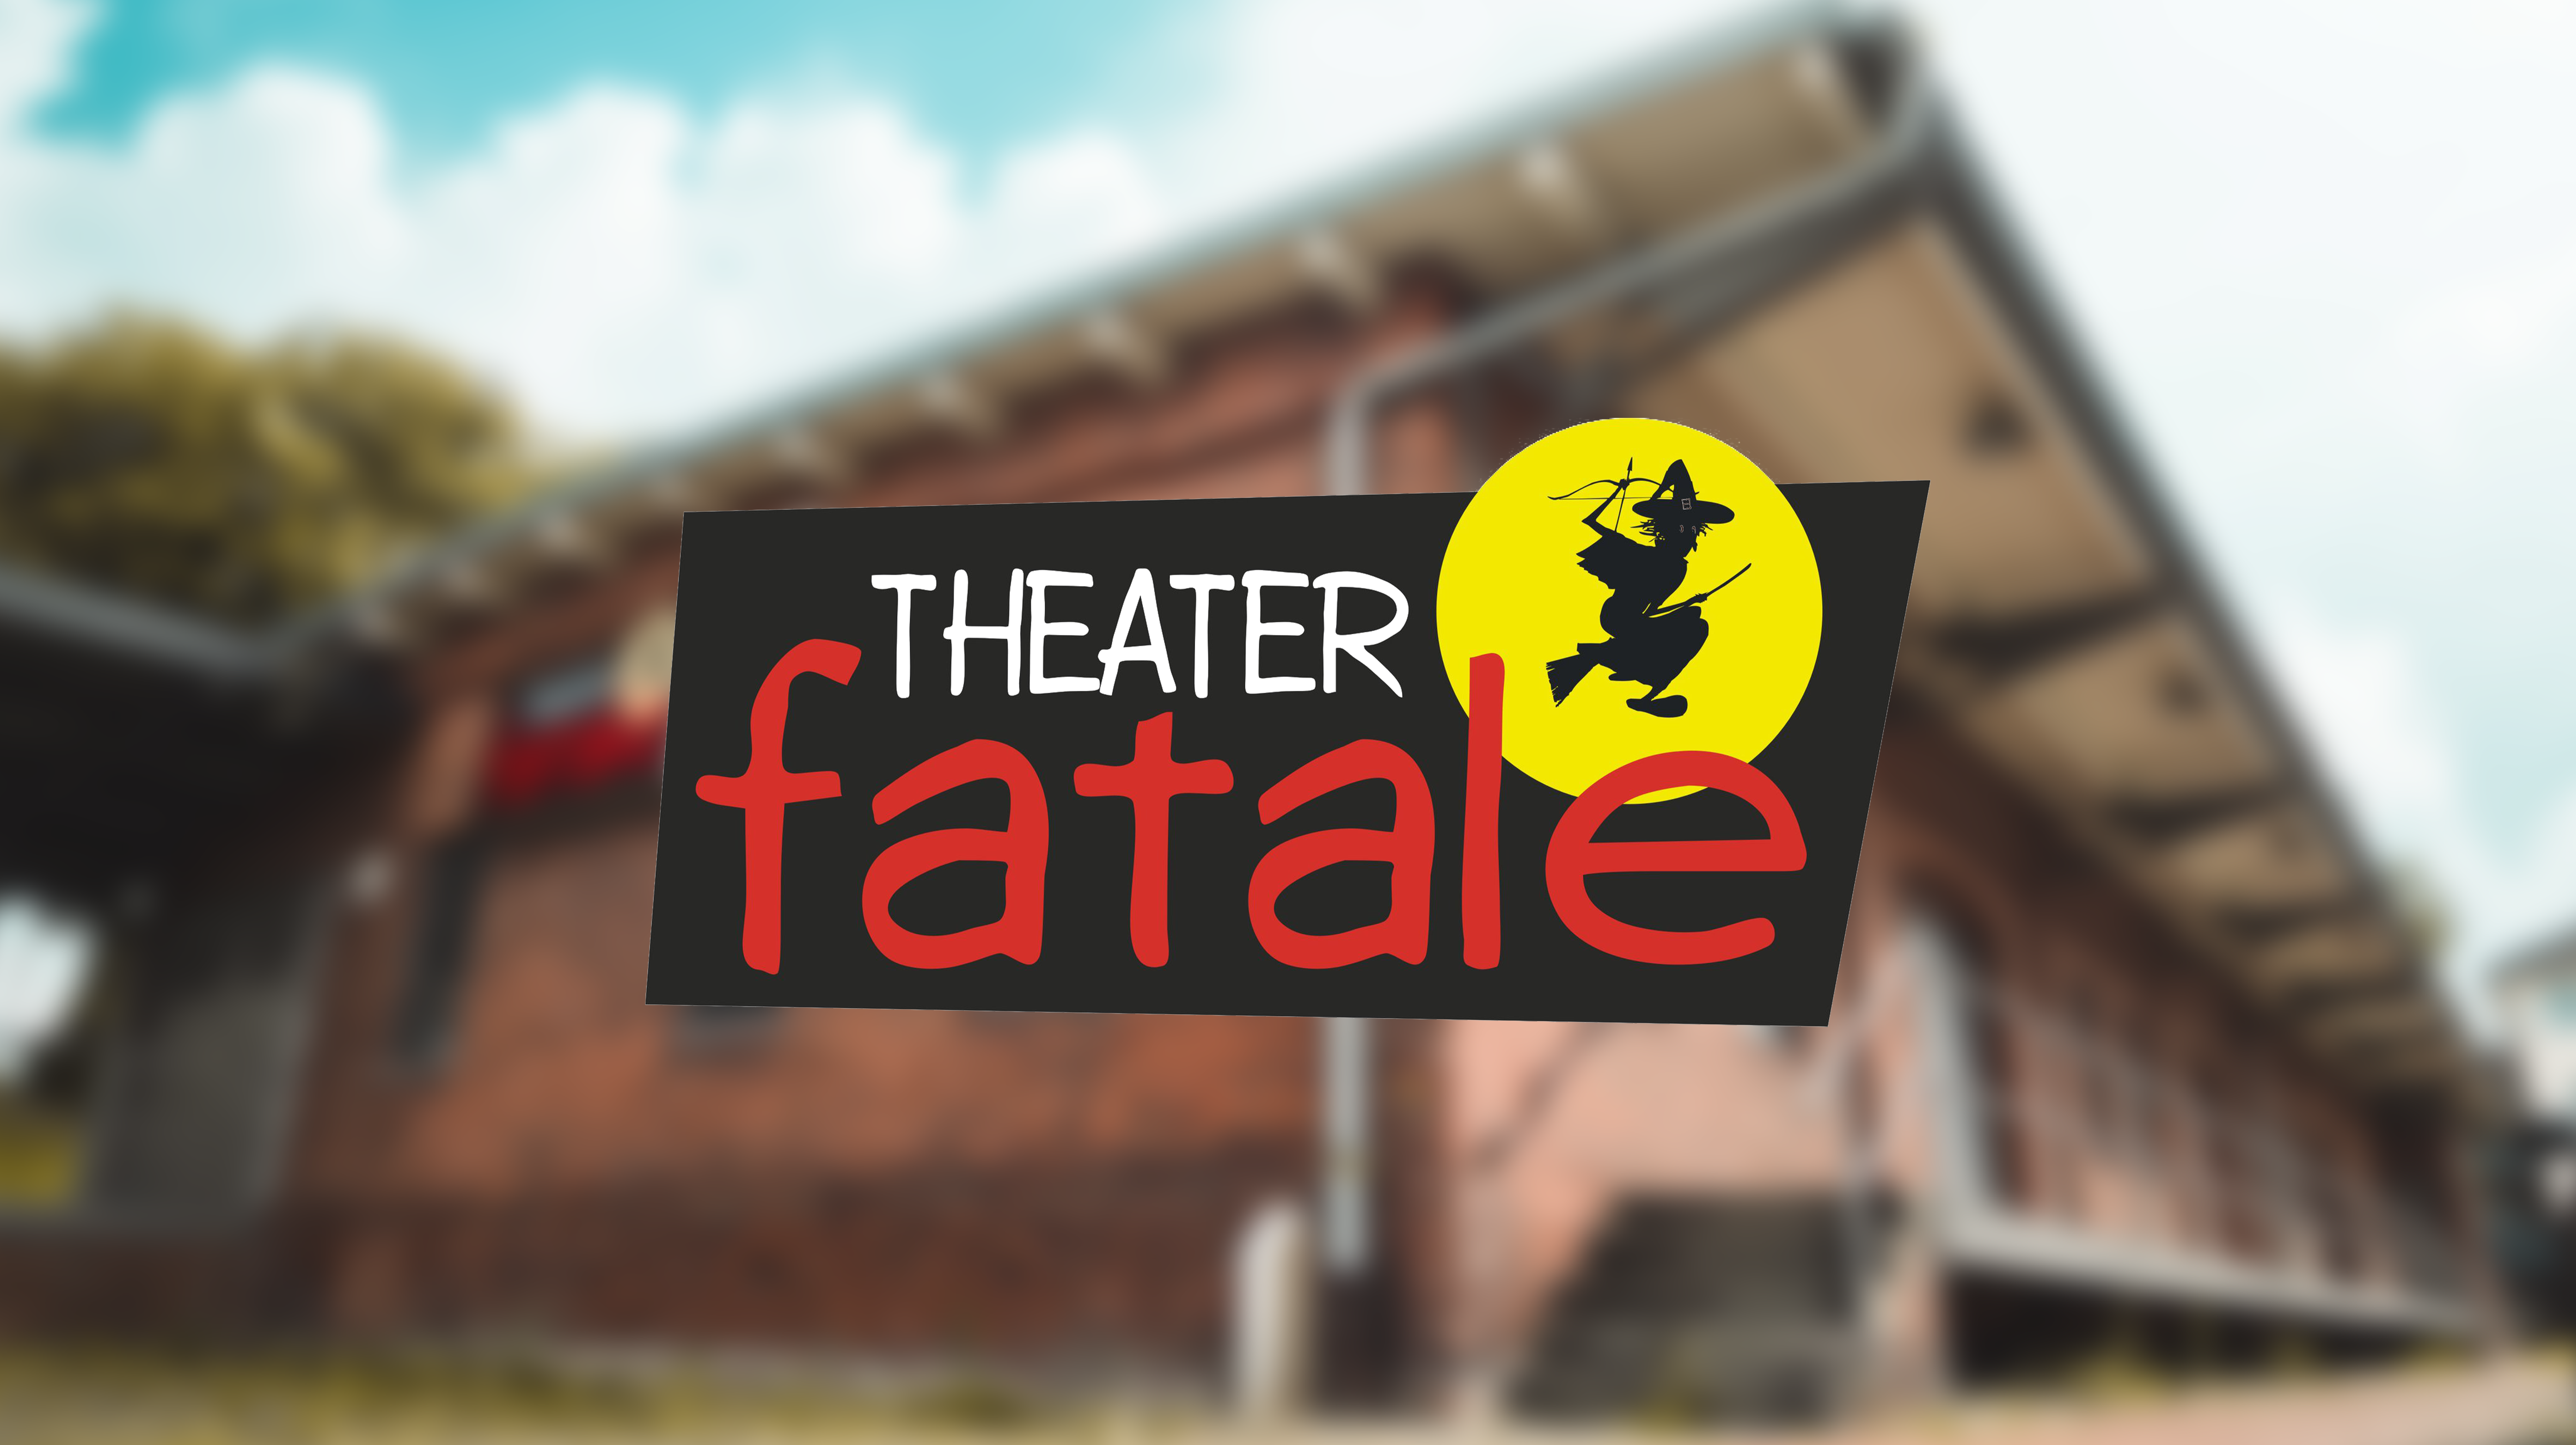 (c) Theater-fatale.com